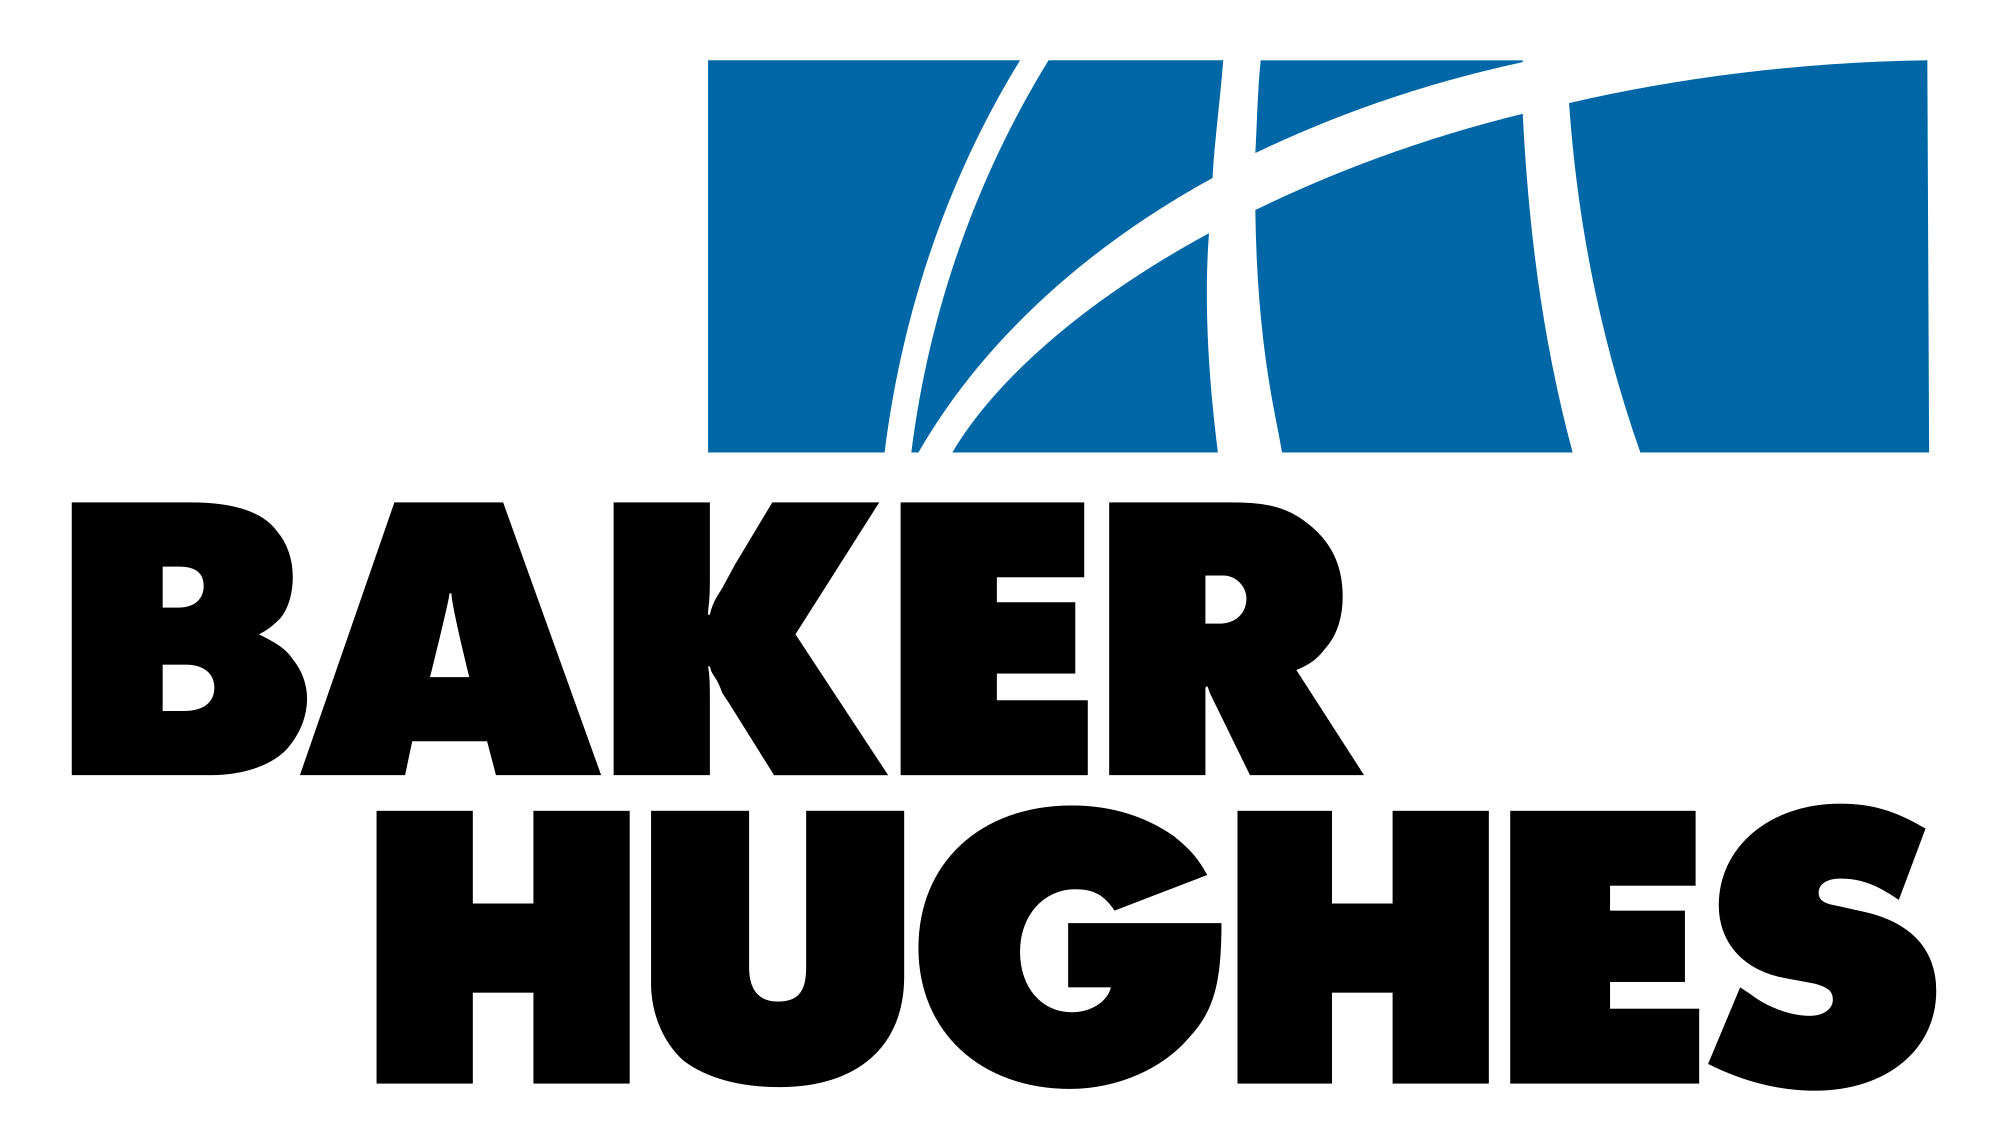 The Baker Logo - Baker Hughes Logo.svg